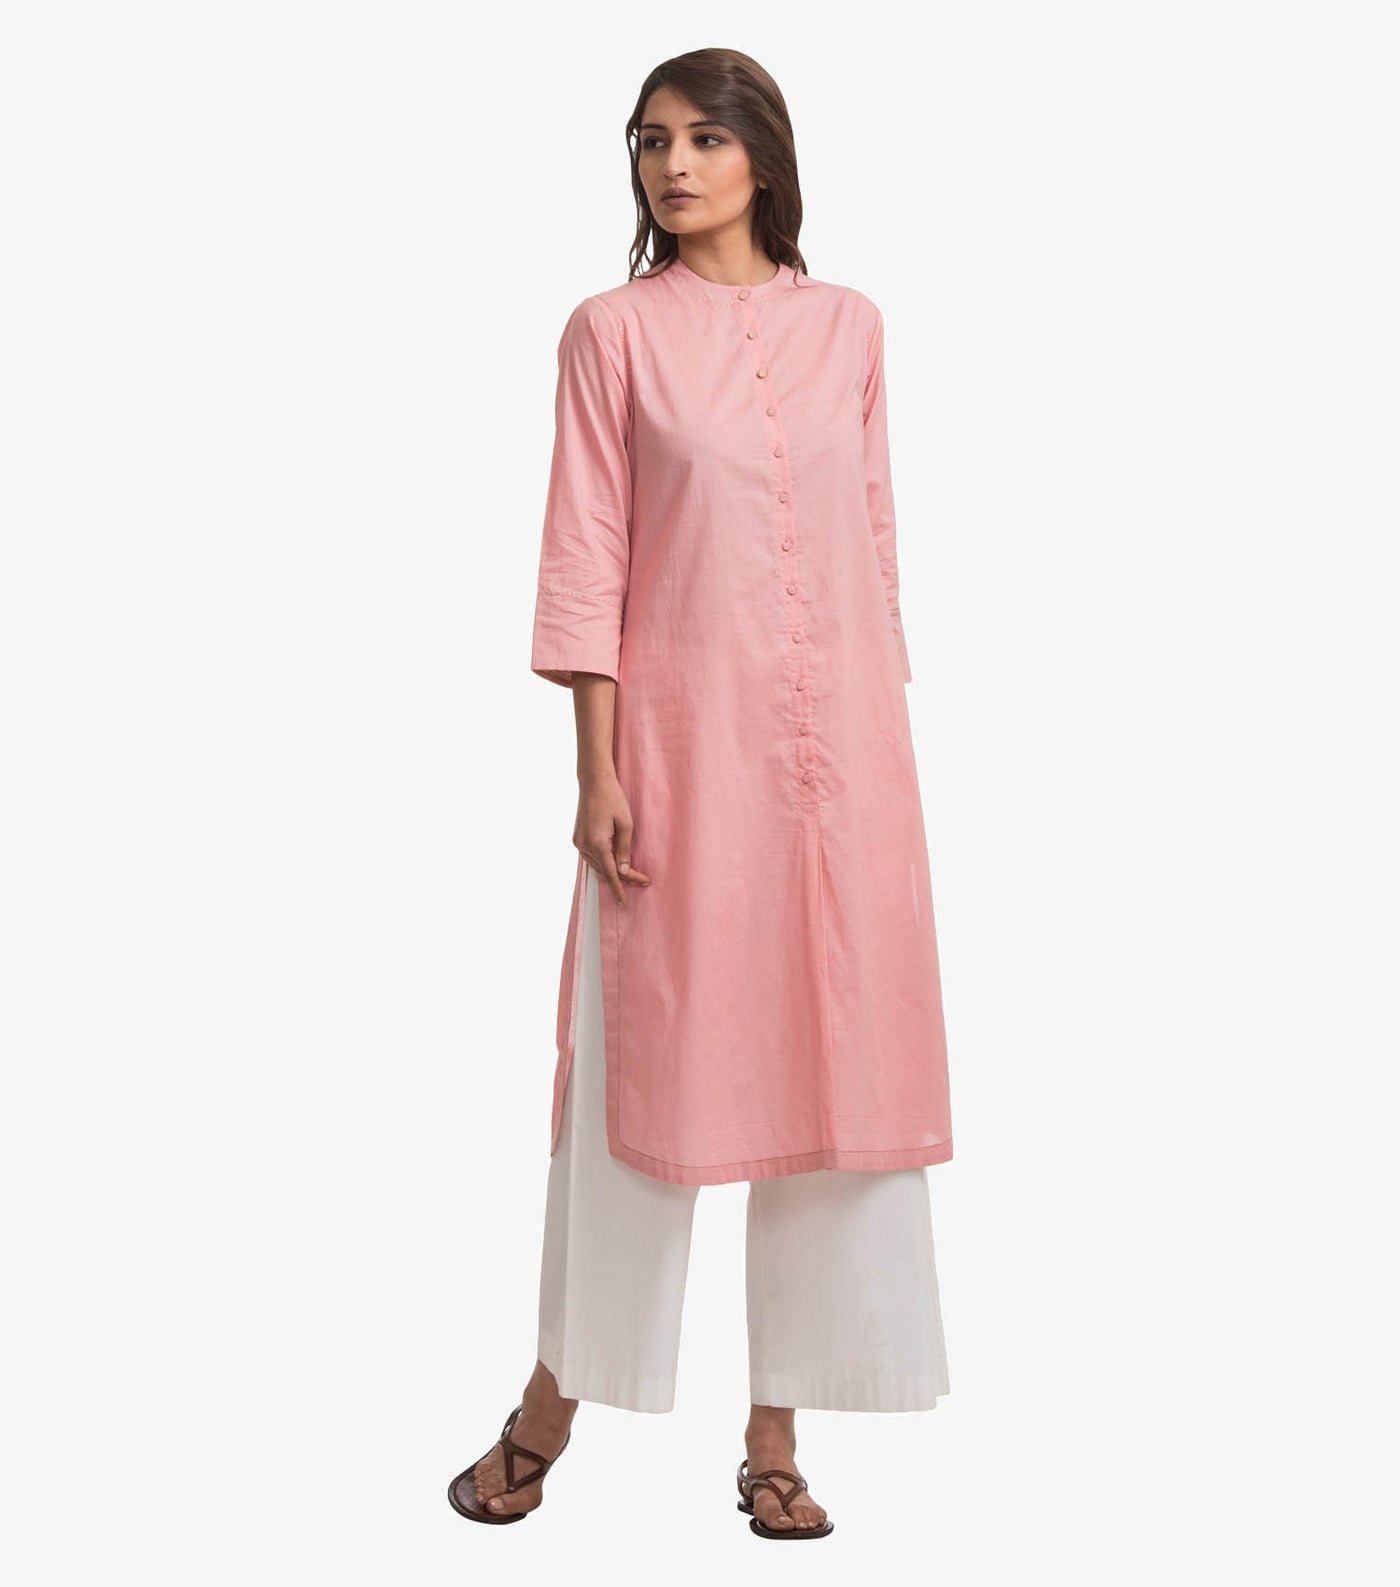 Pink cotton shirt kurta